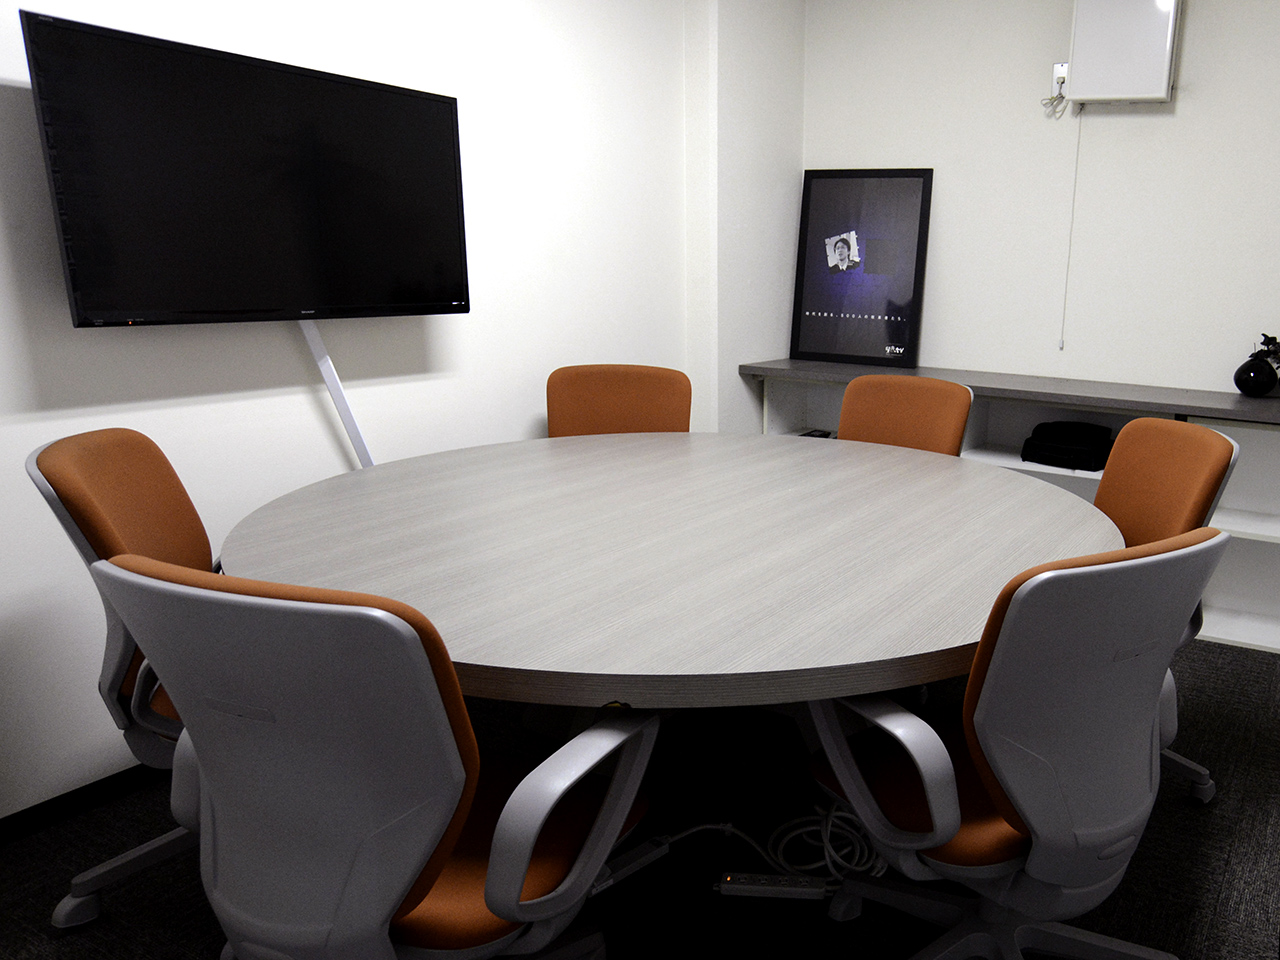 専用のミーティングルームがあったり、簡易打ち合わせスペースがあったり、気さくに仲間と相談できる環境です。